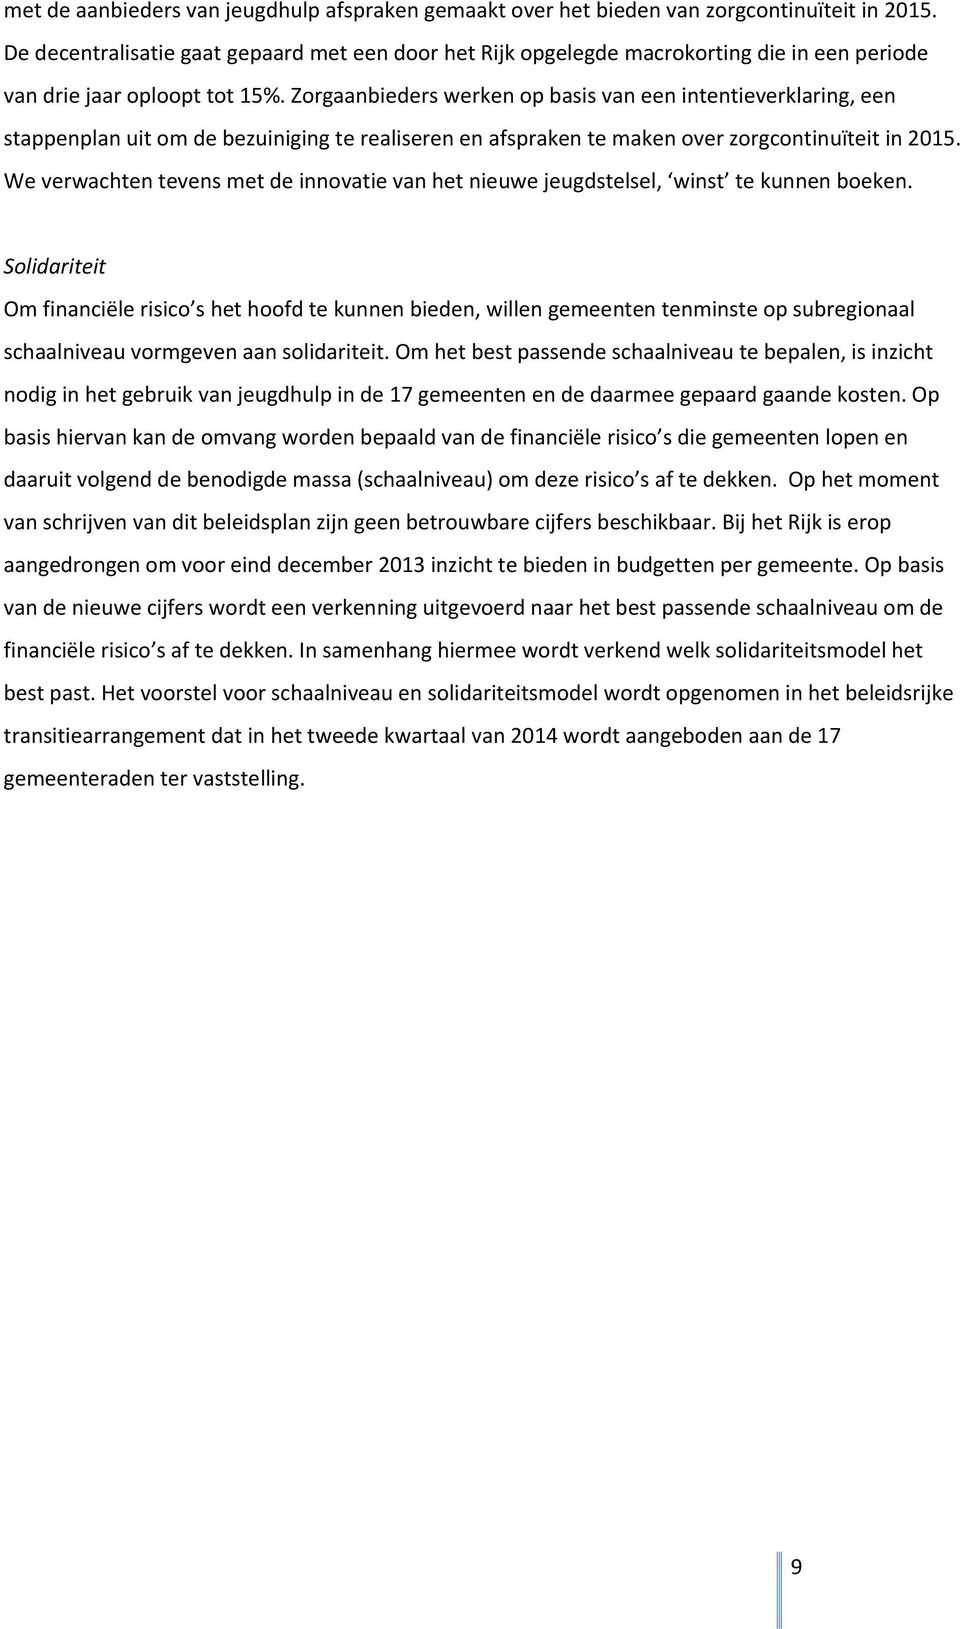 Zorgaanbieders werken op basis van een intentieverklaring, een stappenplan uit om de bezuiniging te realiseren en afspraken te maken over zorgcontinuïteit in 2015.